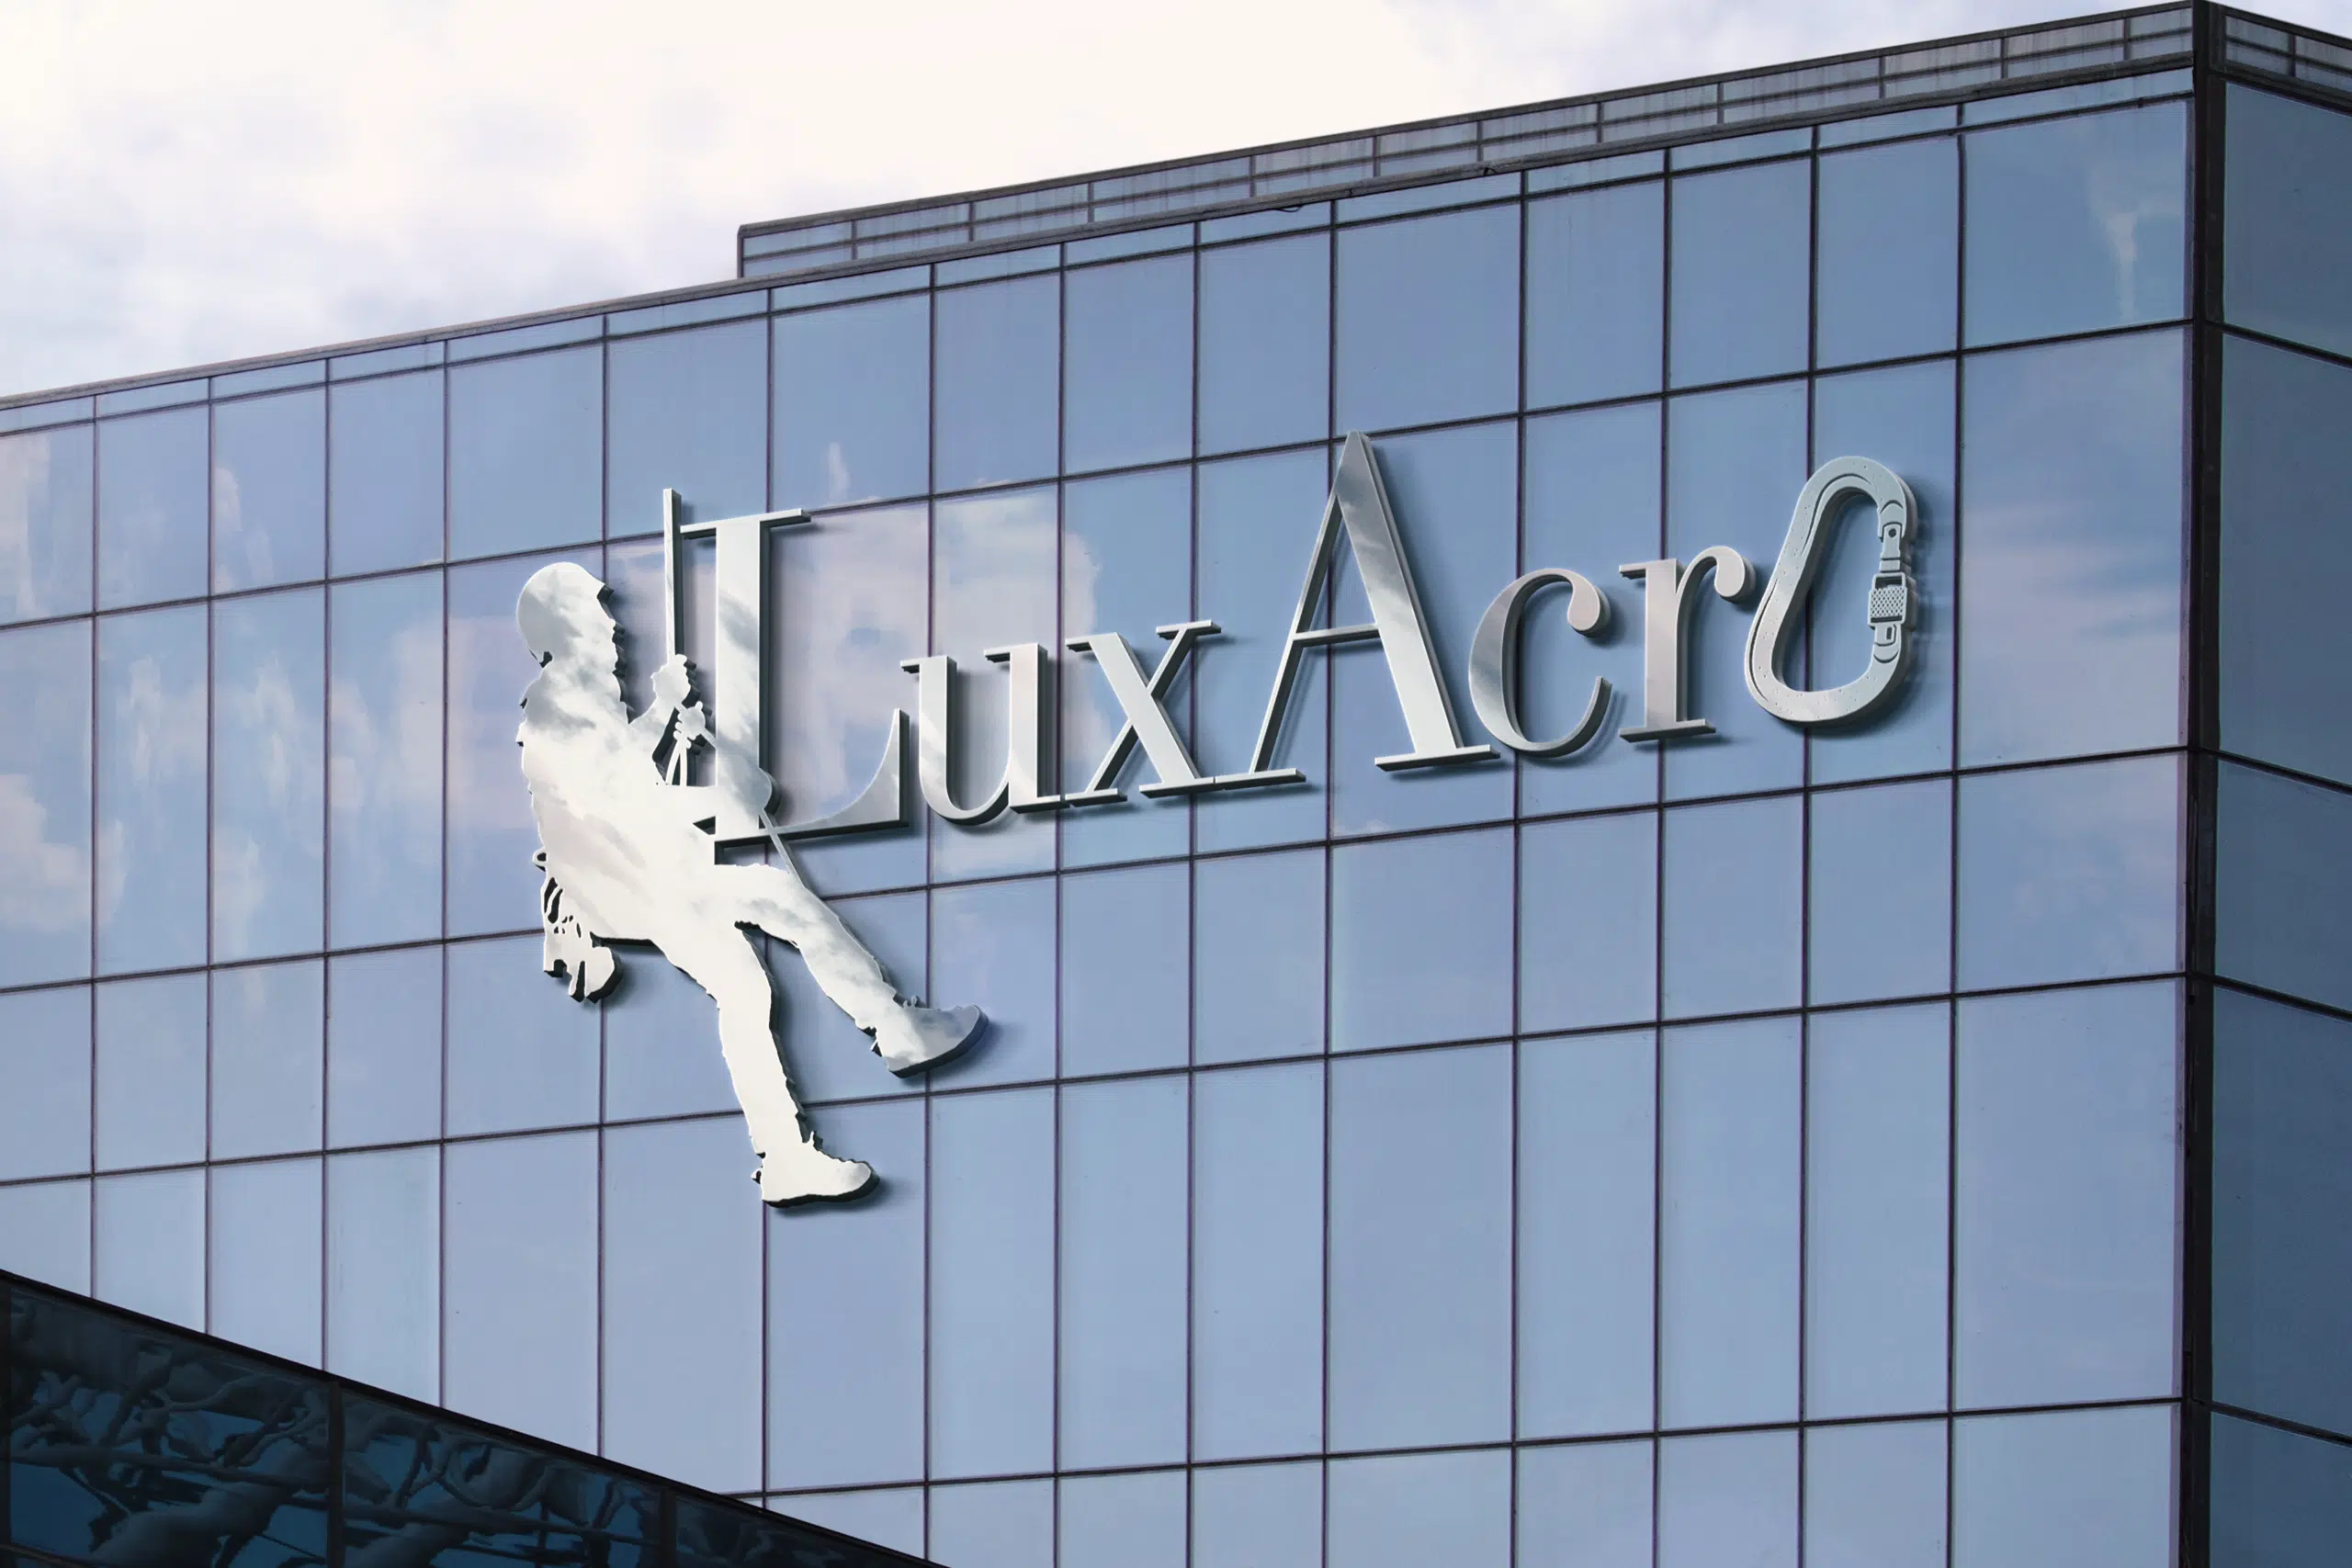 Logo d'entreprise cordiste Lux Acro affichant un homme équipé pour le travail en hauteur sur la silhouette d'un bâtiment, symbolisant professionnalisme et sécurité dans les travaux acrobatiques.